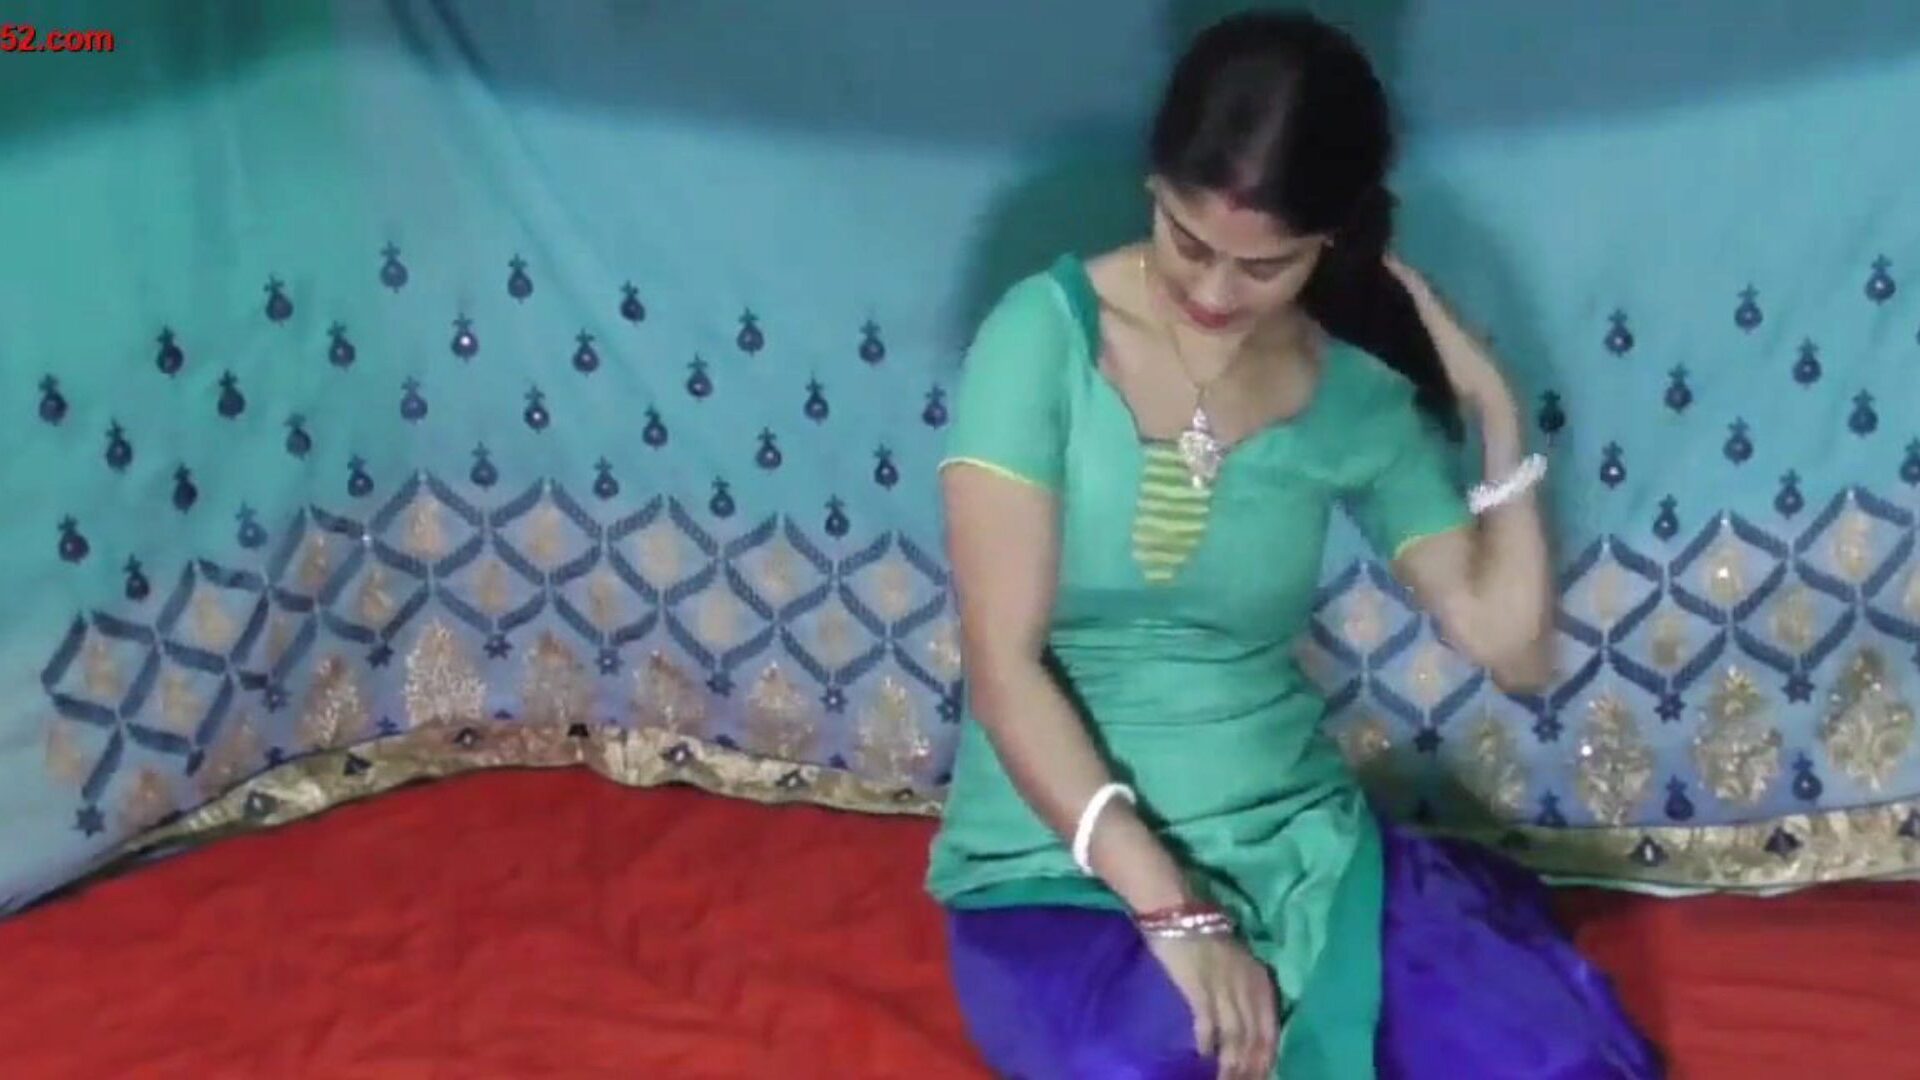 χαριτωμένο n σέξι χωριό ινδικές γυναίκες πατήσαμε μπροστά από ρολόι cam